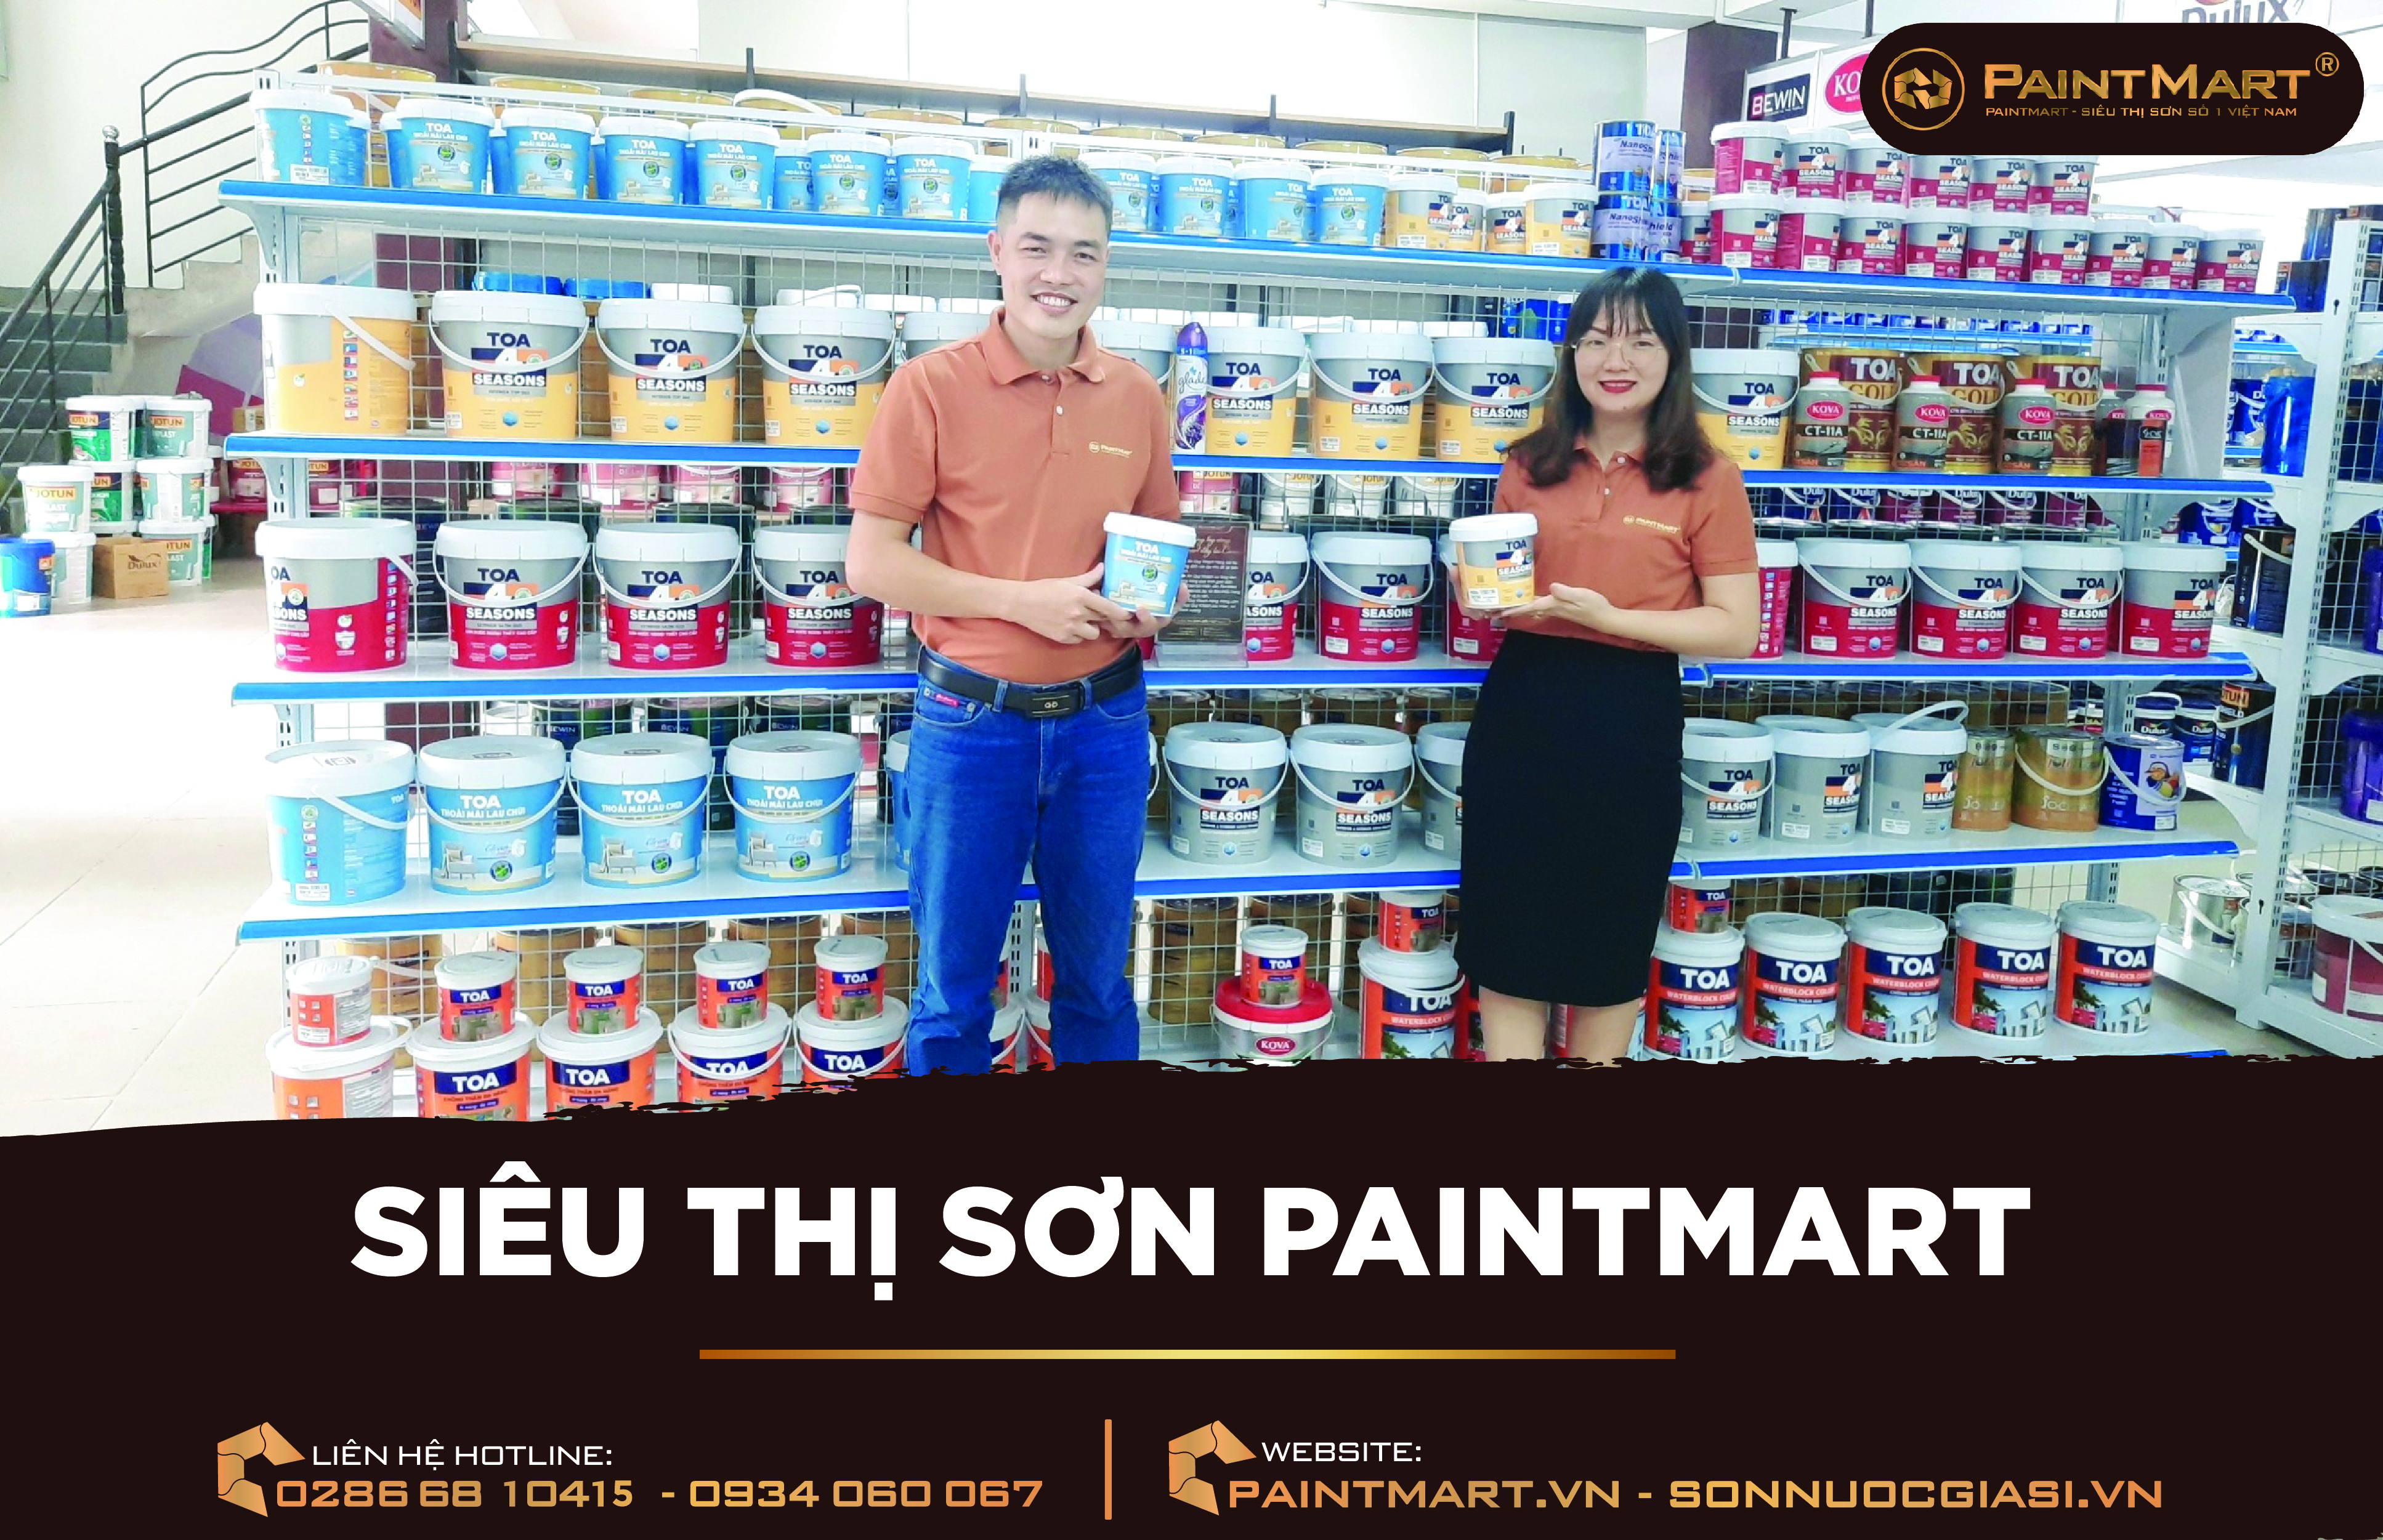 Đại lý sơn Toa Quận Tân Bình là địa chỉ uy tín và chất lượng để các bạn chọn lựa các sản phẩm sơn của thương hiệu Toa. Với đội ngũ nhân viên chuyên nghiệp và tận tình, các bạn sẽ không phải lo lắng về việc chọn lựa các sản phẩm sơn phù hợp nhất cho ngôi nhà của mình.